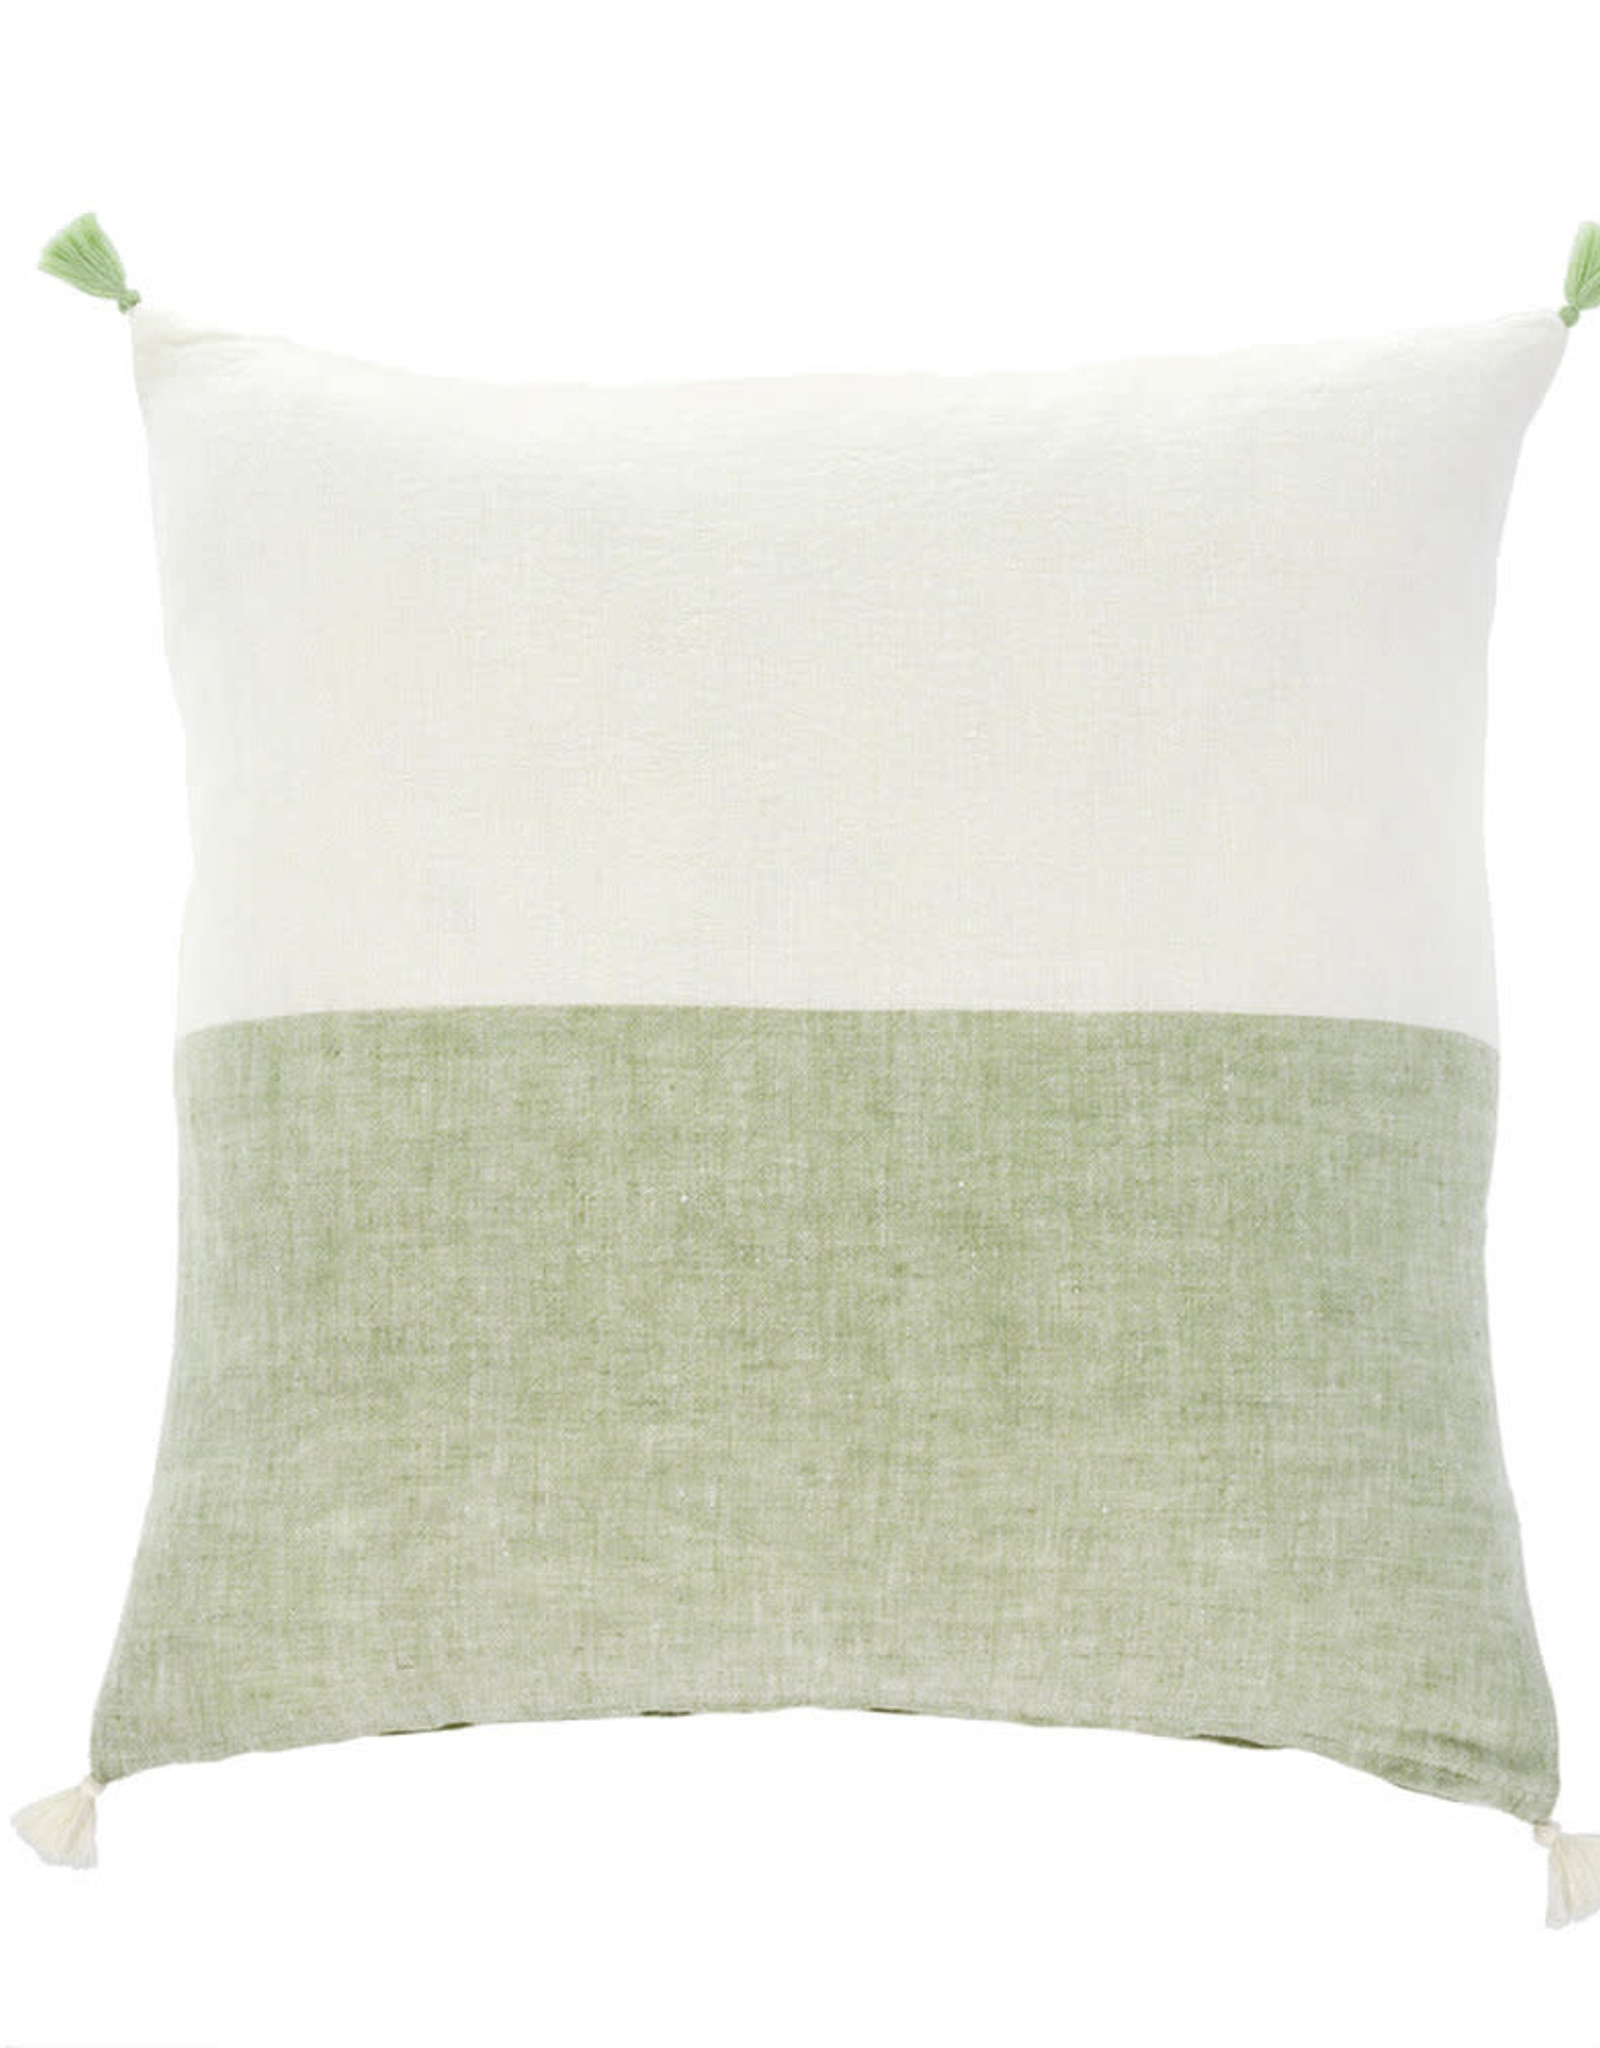 Layla Linen Pillow Green 20x20